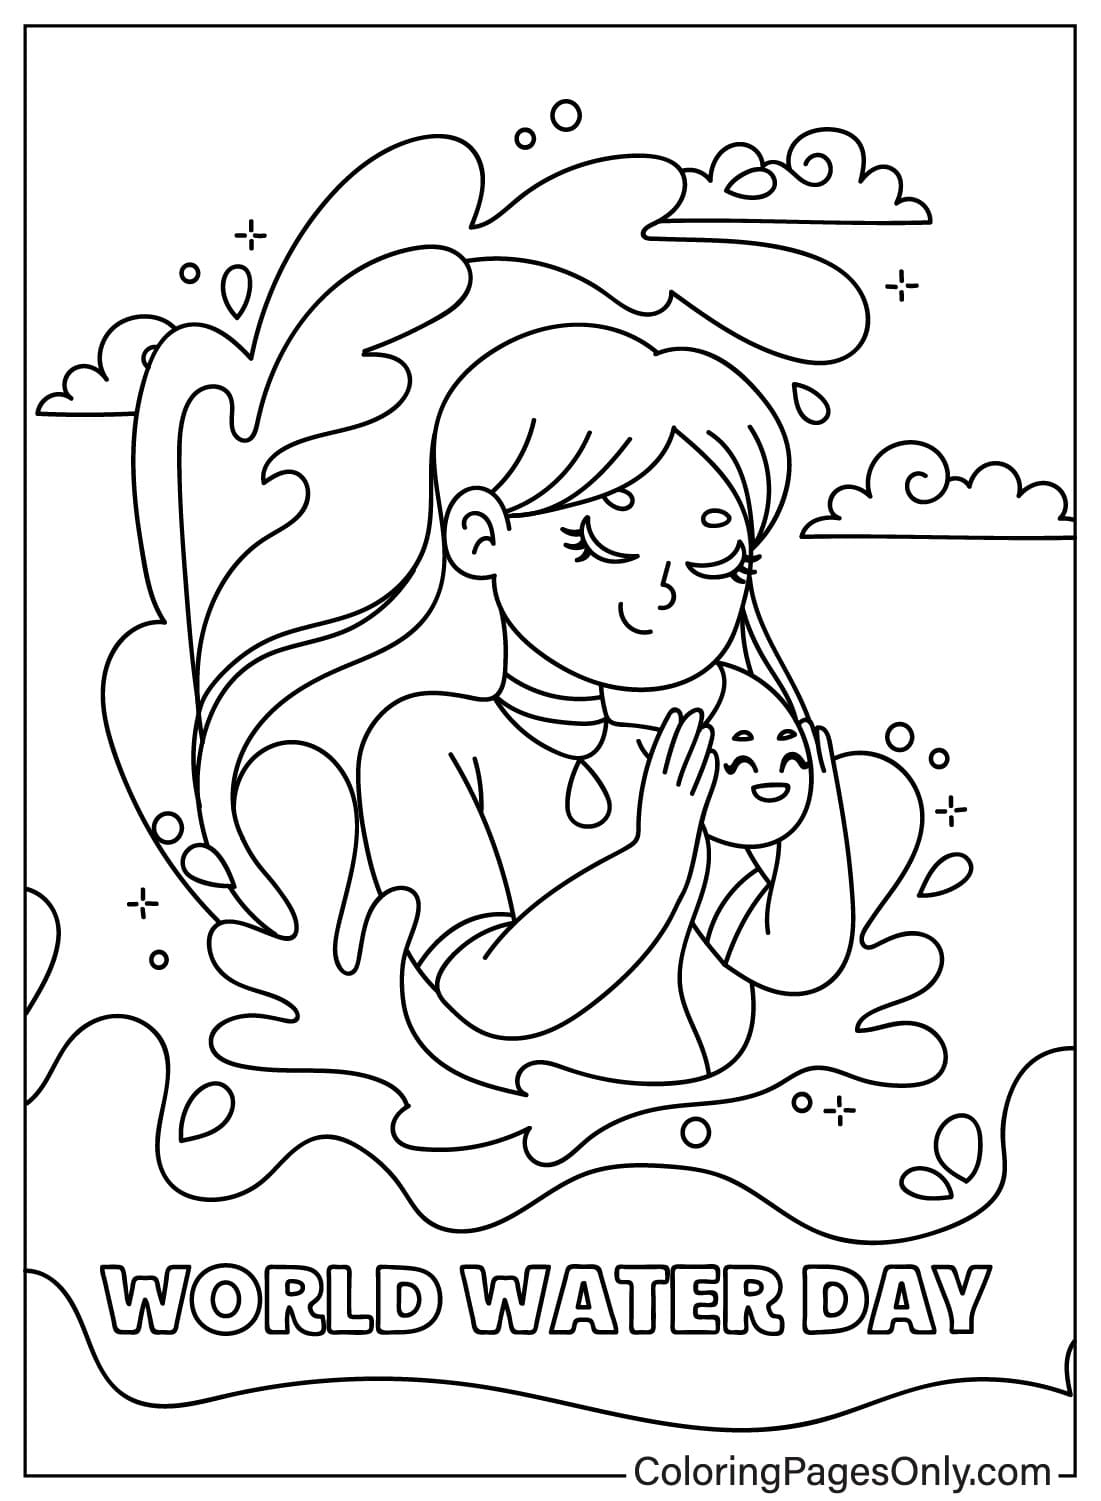 Картинки раскраски Всемирный день воды из Всемирного дня воды